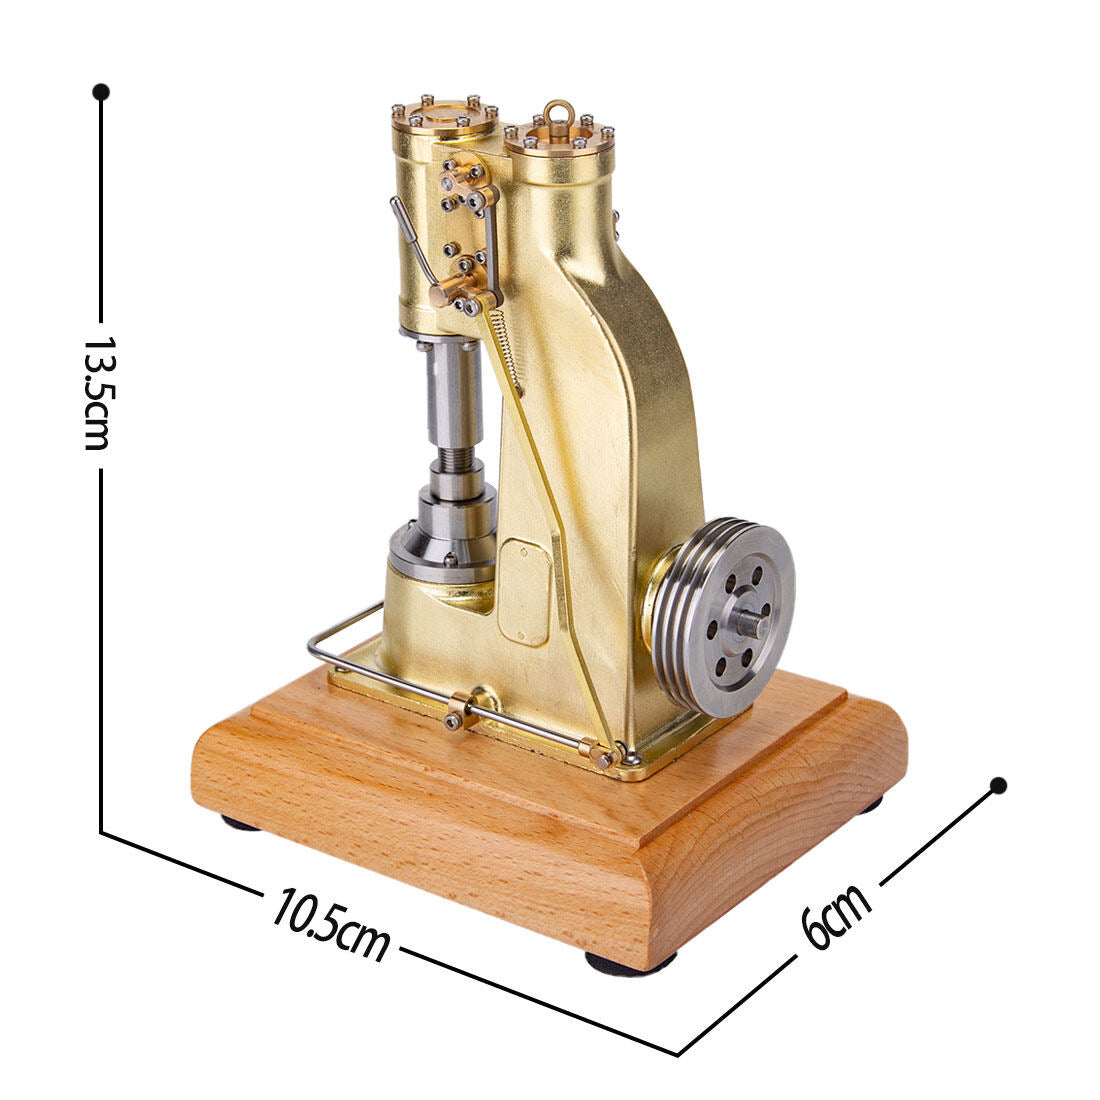 Miniatur-Modell einer Messing-Kolben-Schmiedemaschine für die industrielle Schmiede 7